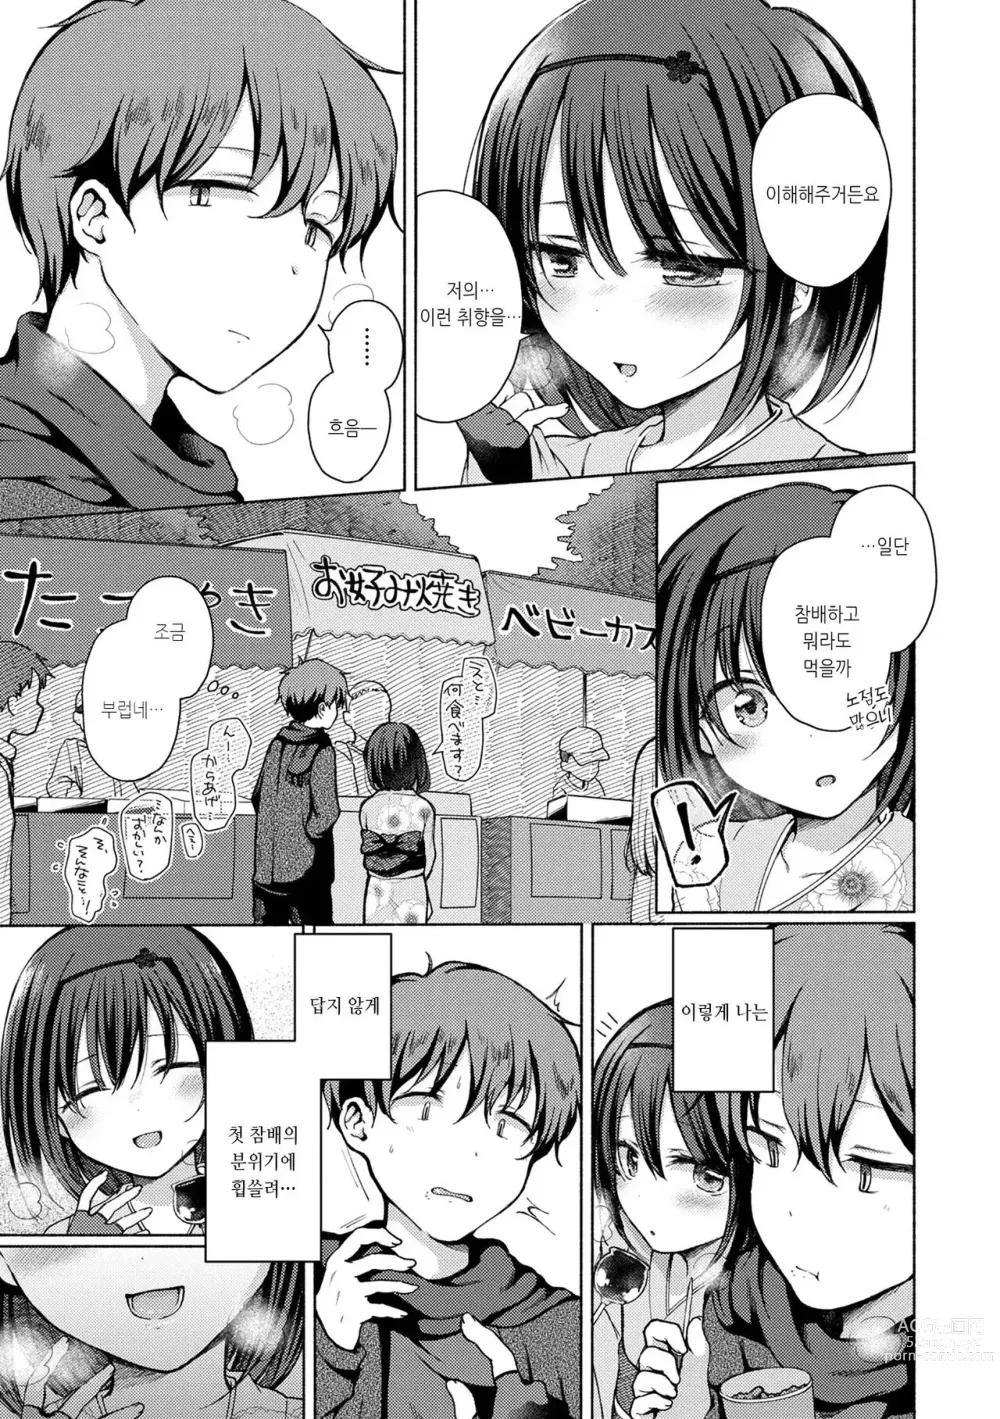 Page 3 of manga 그 아이는 여기서도 하려한다...2